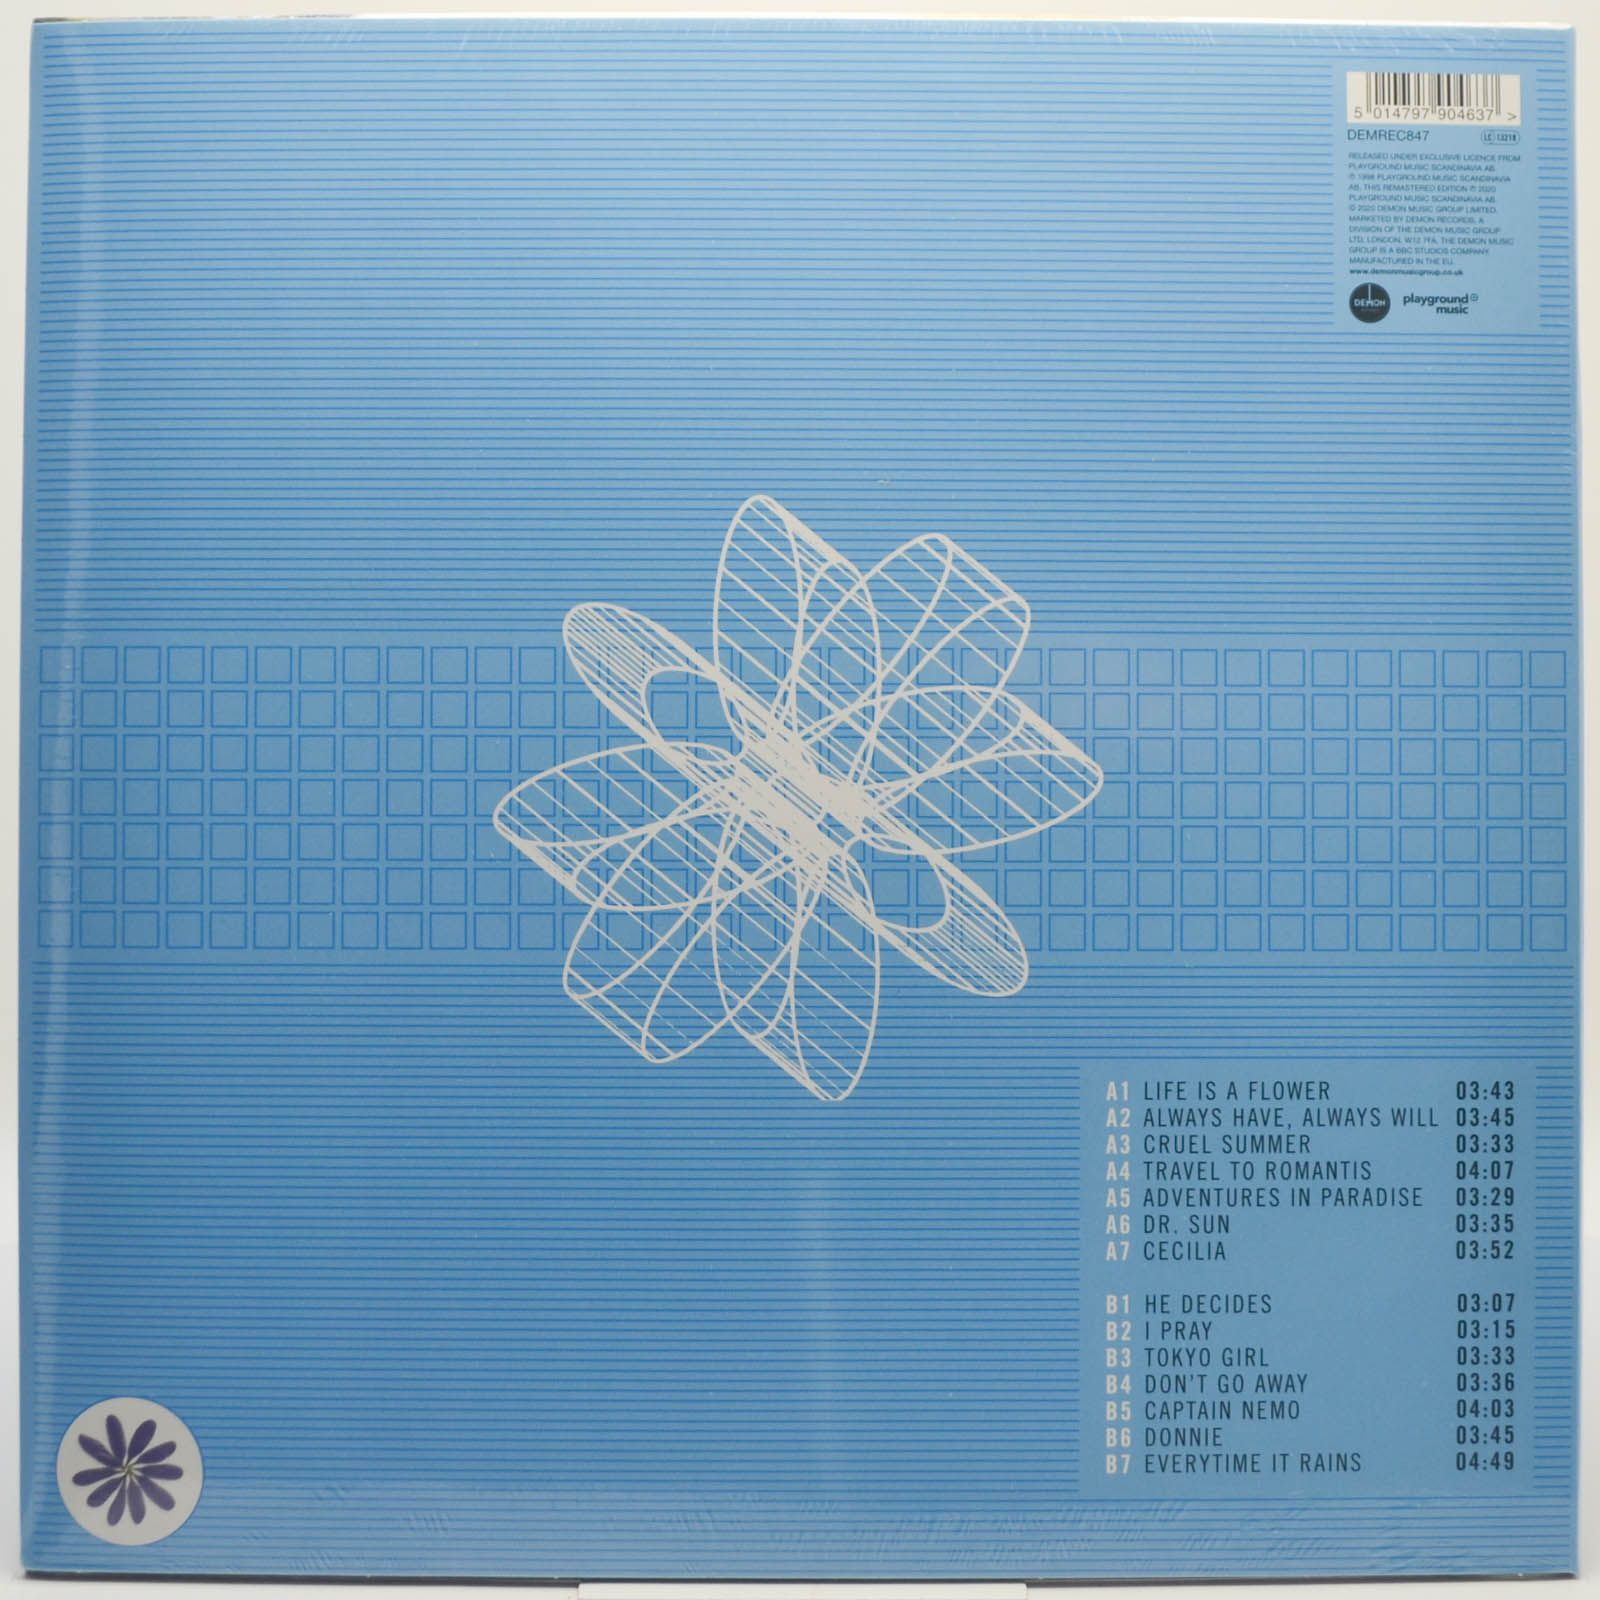 Ace Of Base — Flowers (UK), 1998